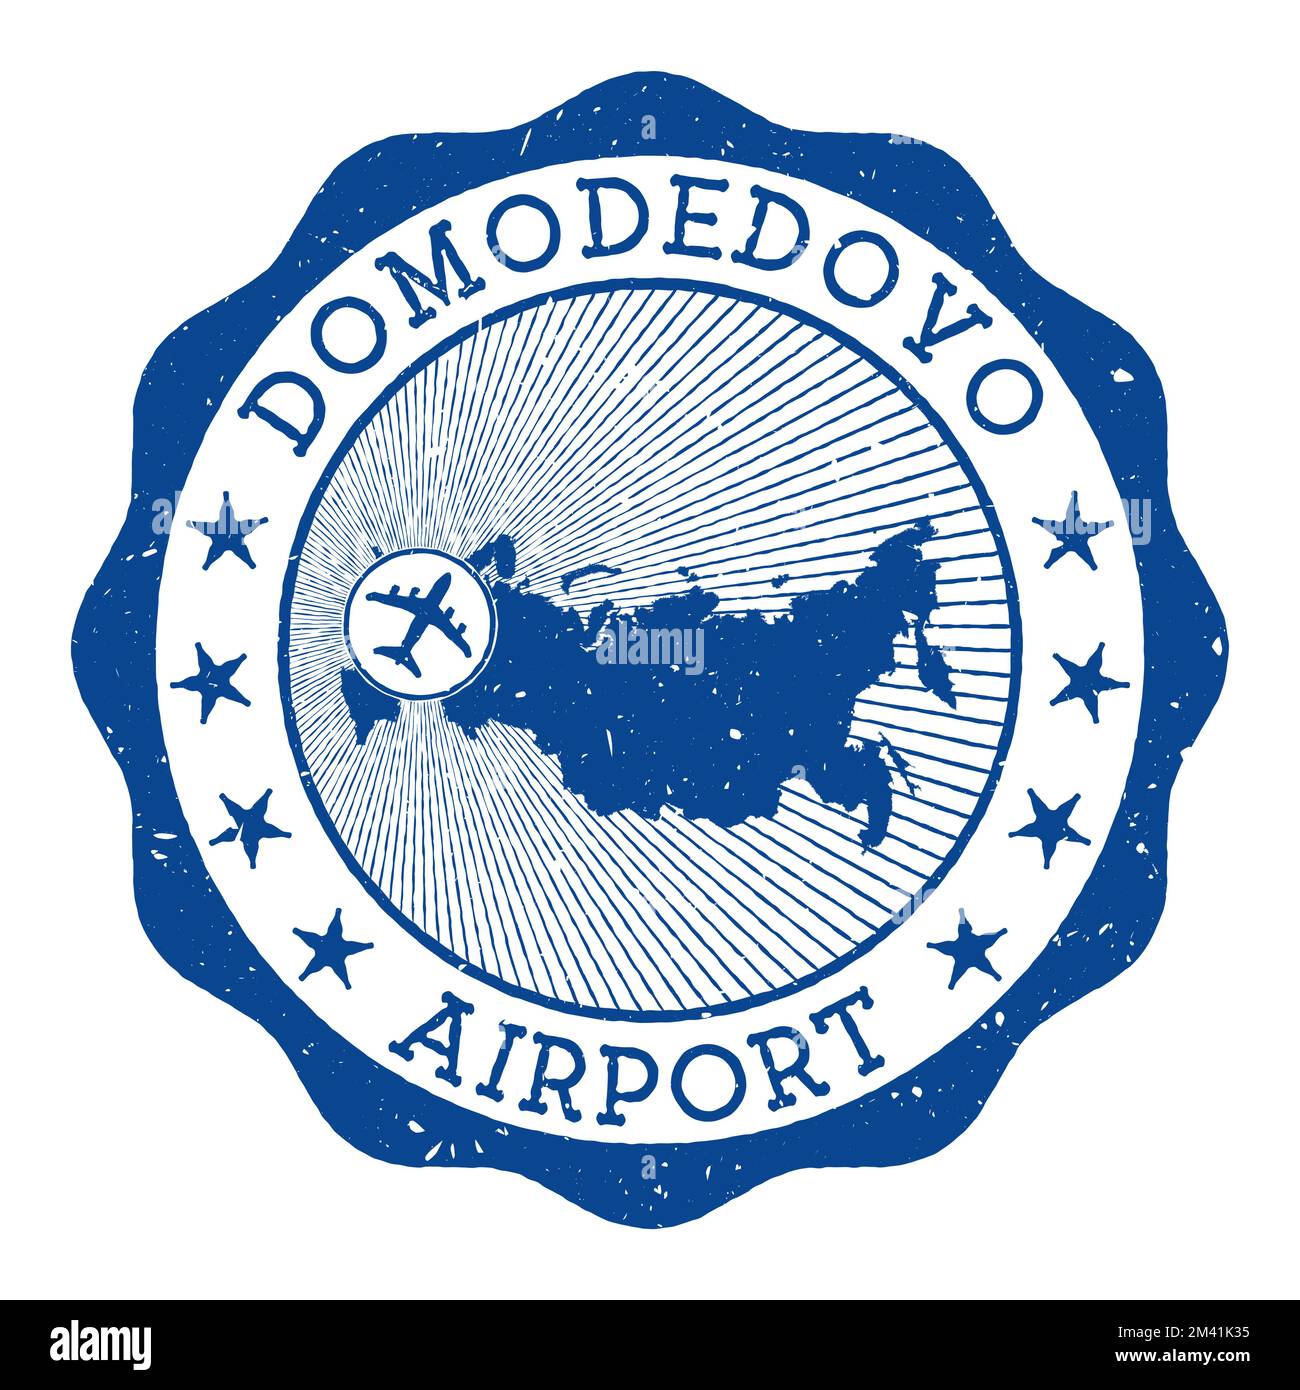 Timbre de l'aéroport Domodedovo. Logo rond de l'aéroport de Moscou avec emplacement sur la carte de Russie marquée par avion. Illustration vectorielle. Illustration de Vecteur